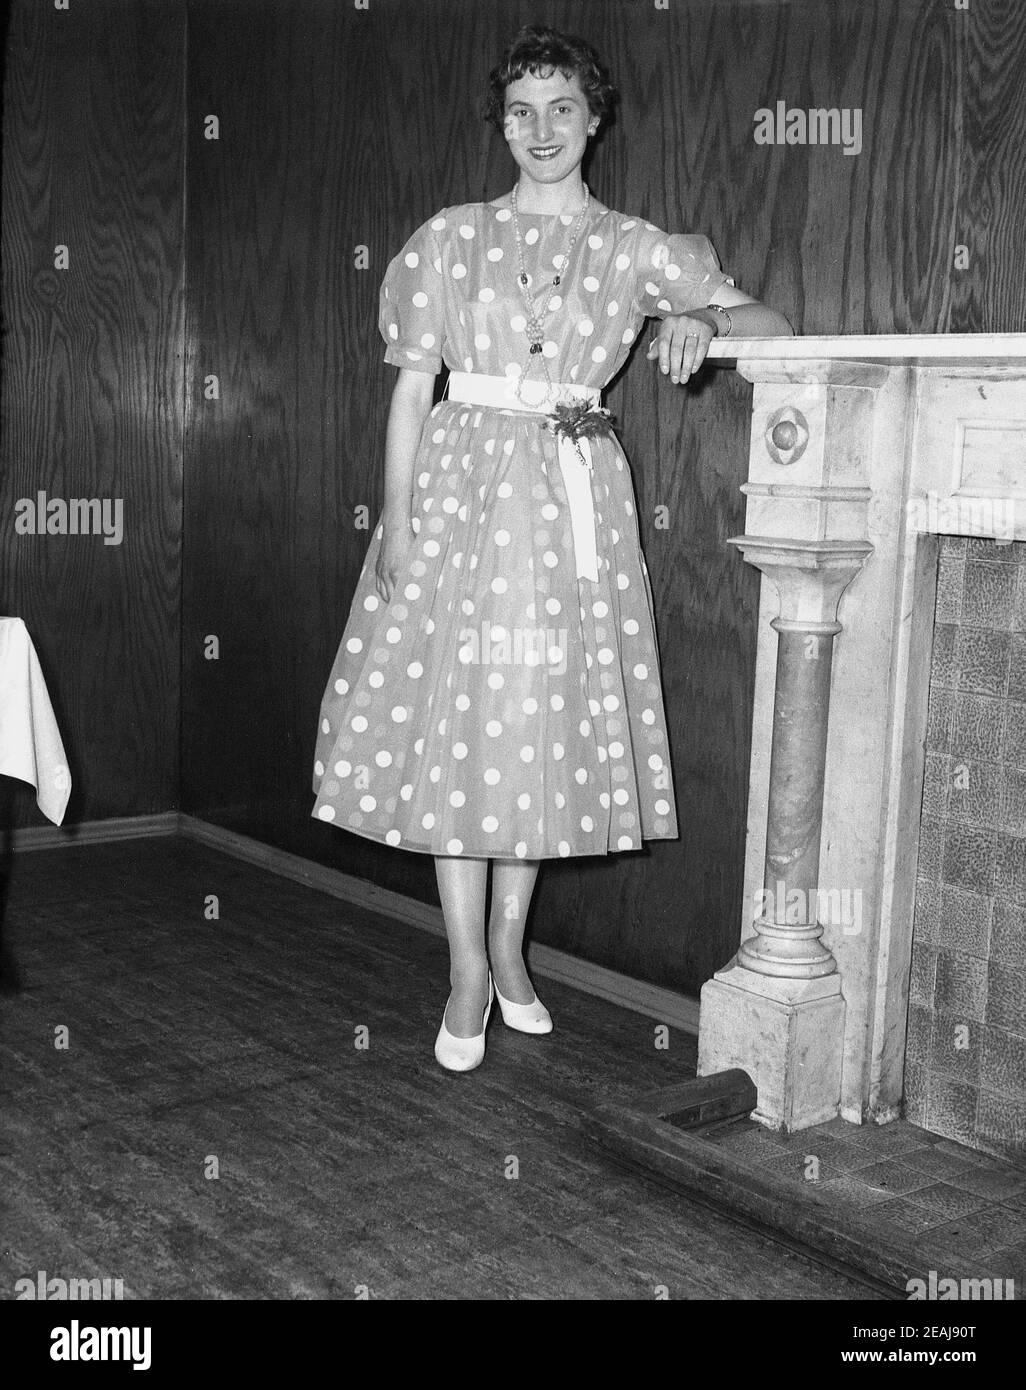 1950s, historisch, eine junge Dame mit einem gepunkteten oder gepunkteten  Kleid, die in einem Veranstaltungsraum neben einem Kamin steht. Sie feiert  ihren 21at. Geburtstag. Solch ein Partykleid mit Punkten auf einem  Hintergrund